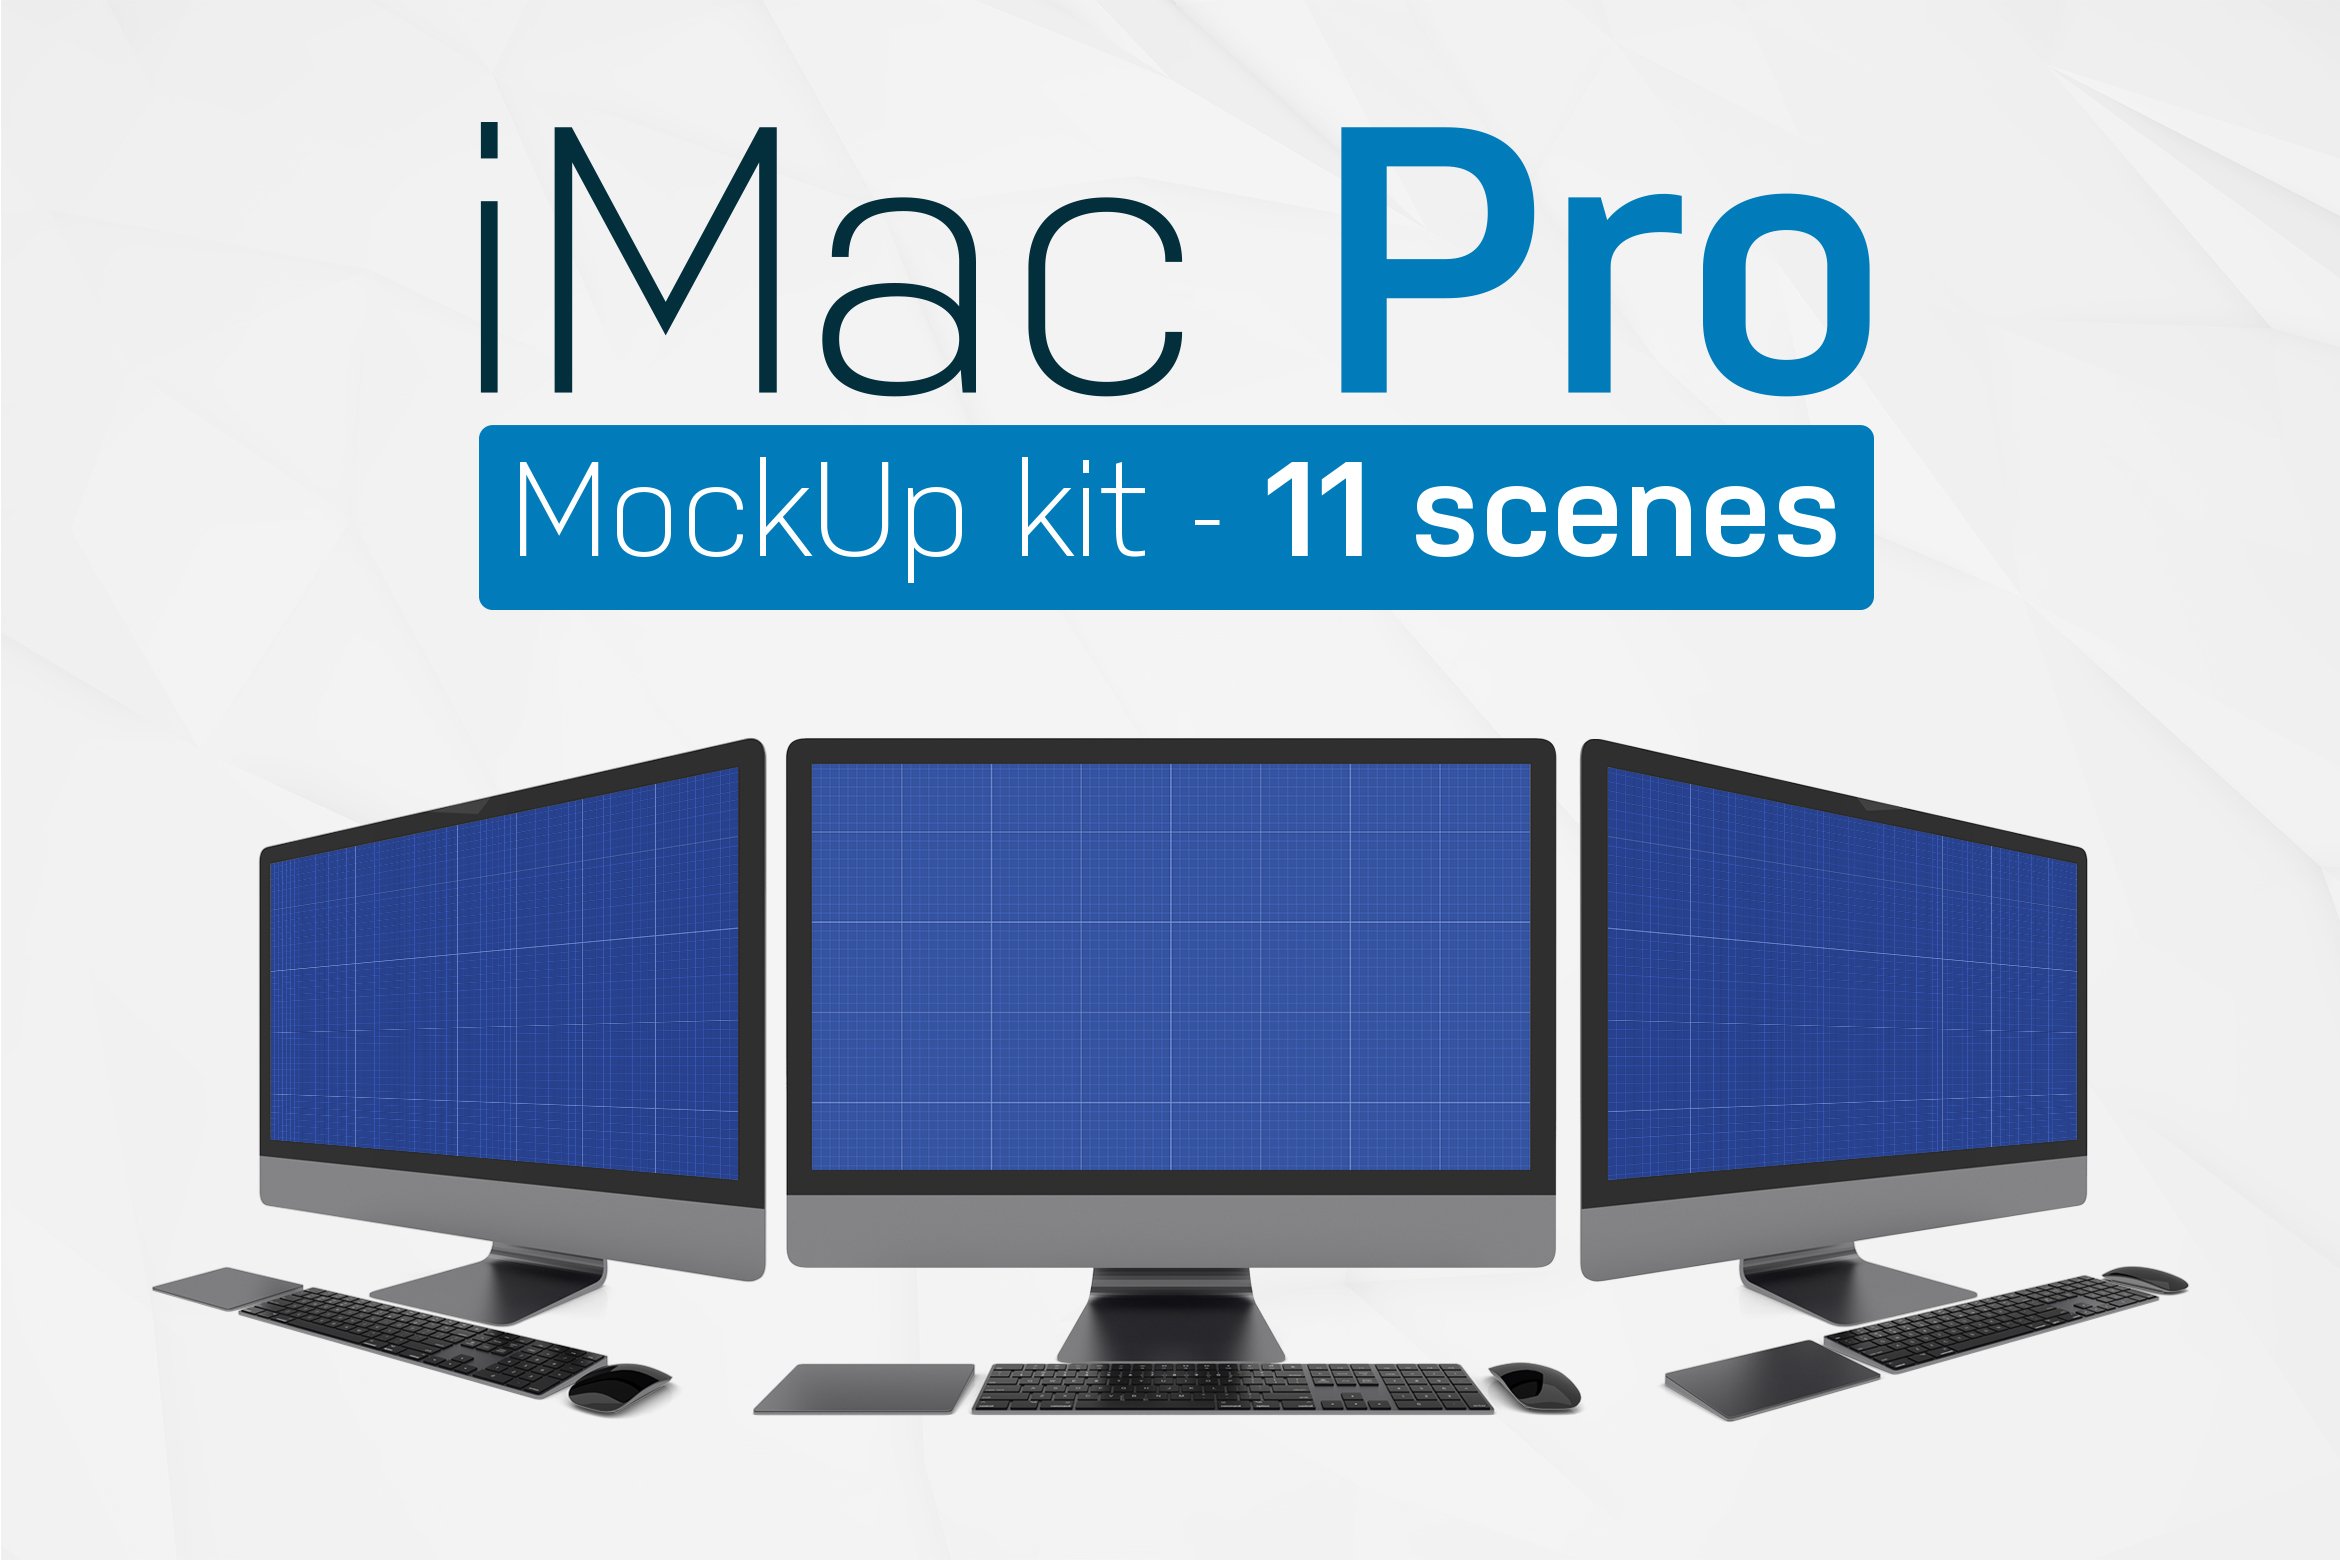 iMac Pro Kit cover image.